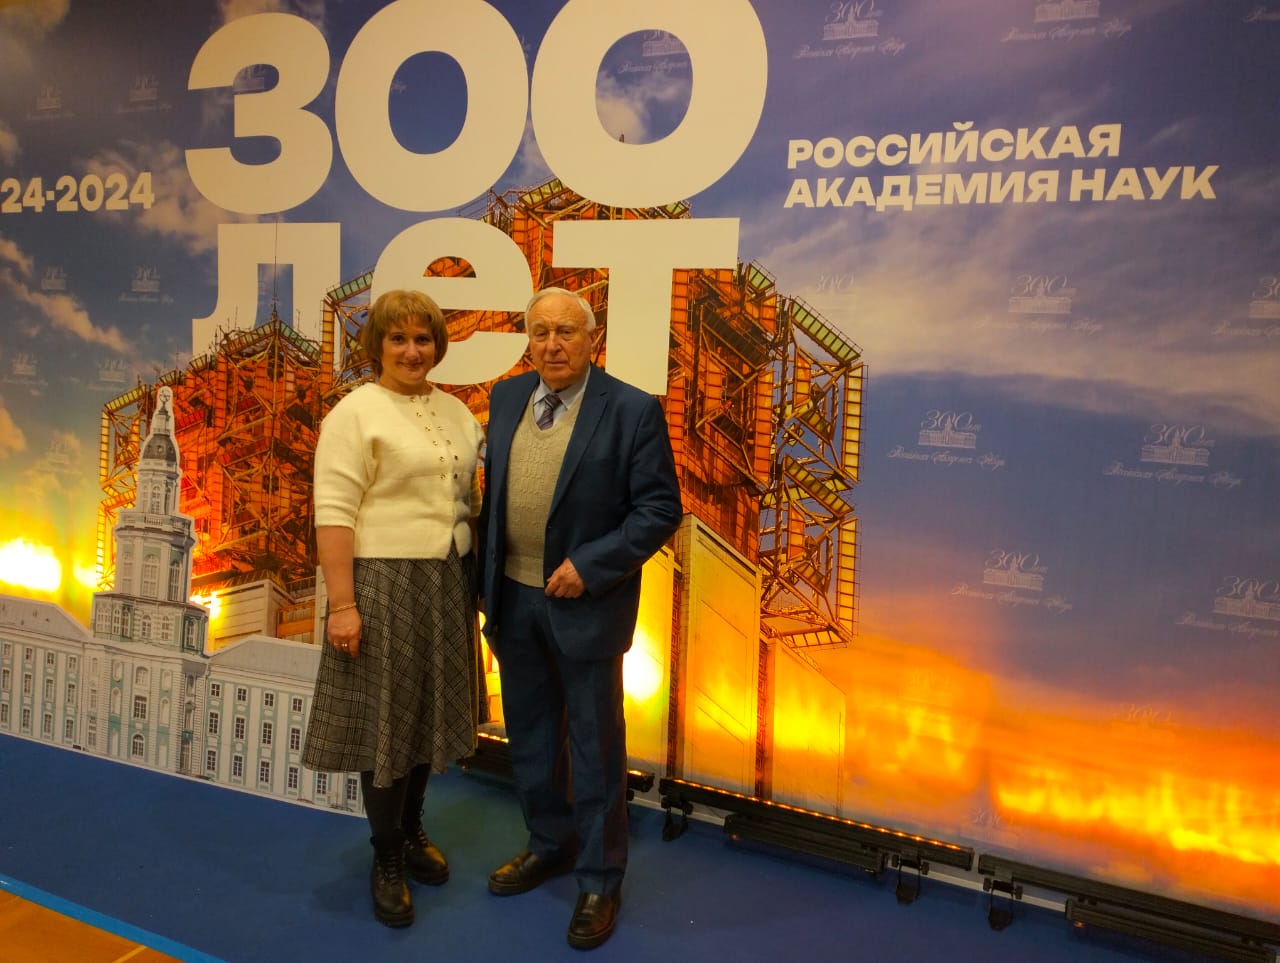 К 300-летию Российской академии наук в Государственном Кремлёвском Дворце состоялся торжественный вечер